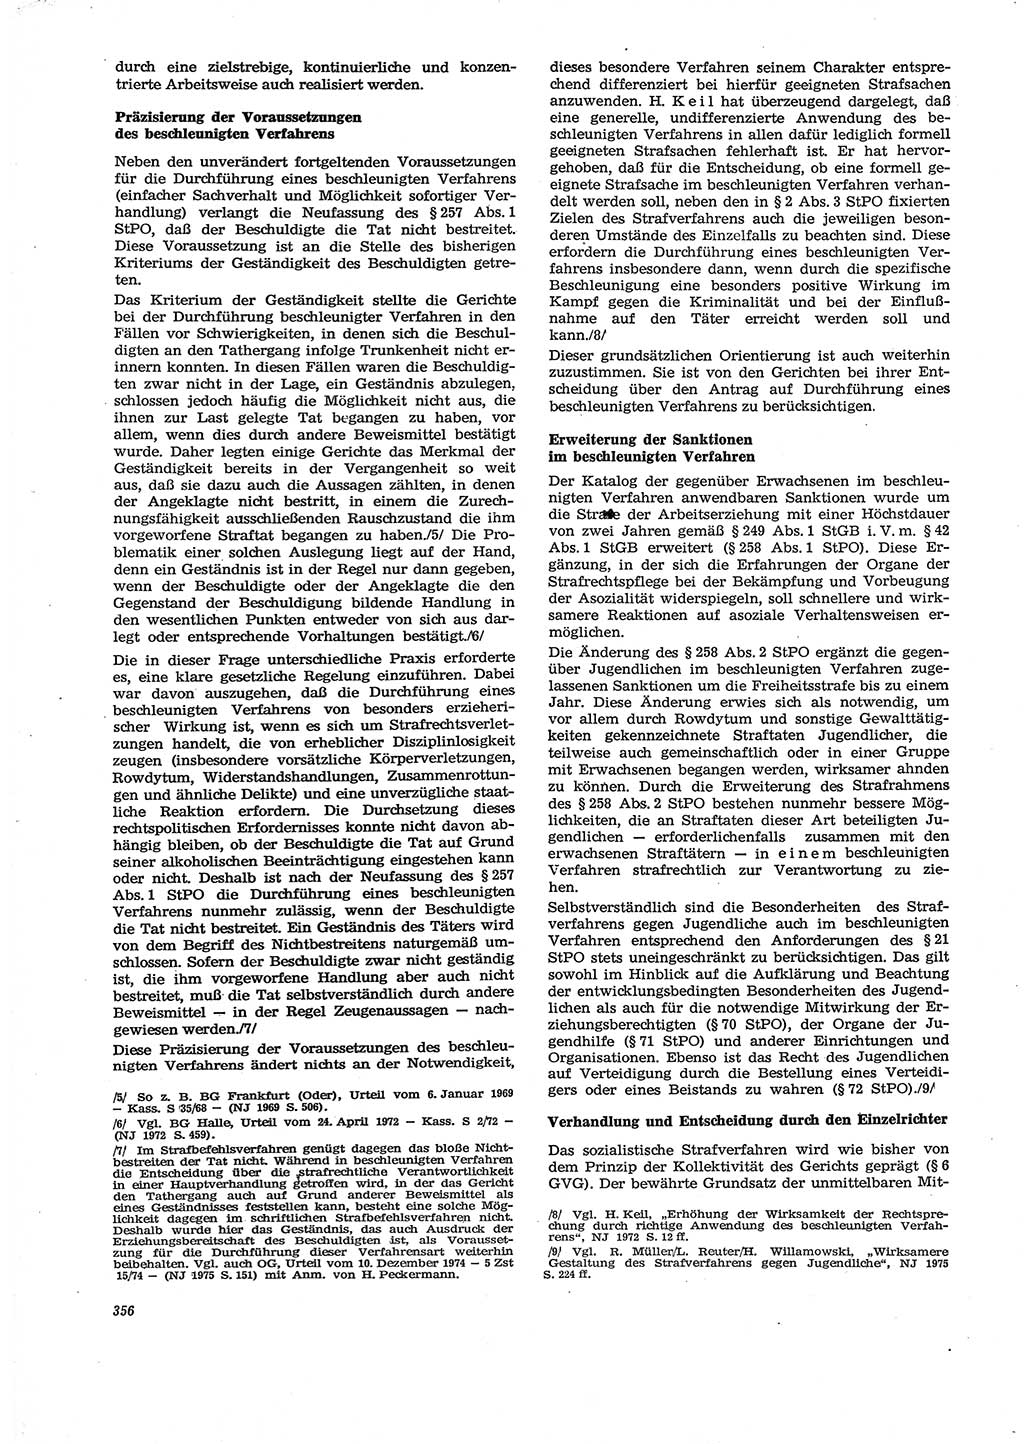 Neue Justiz (NJ), Zeitschrift für Recht und Rechtswissenschaft [Deutsche Demokratische Republik (DDR)], 29. Jahrgang 1975, Seite 356 (NJ DDR 1975, S. 356)